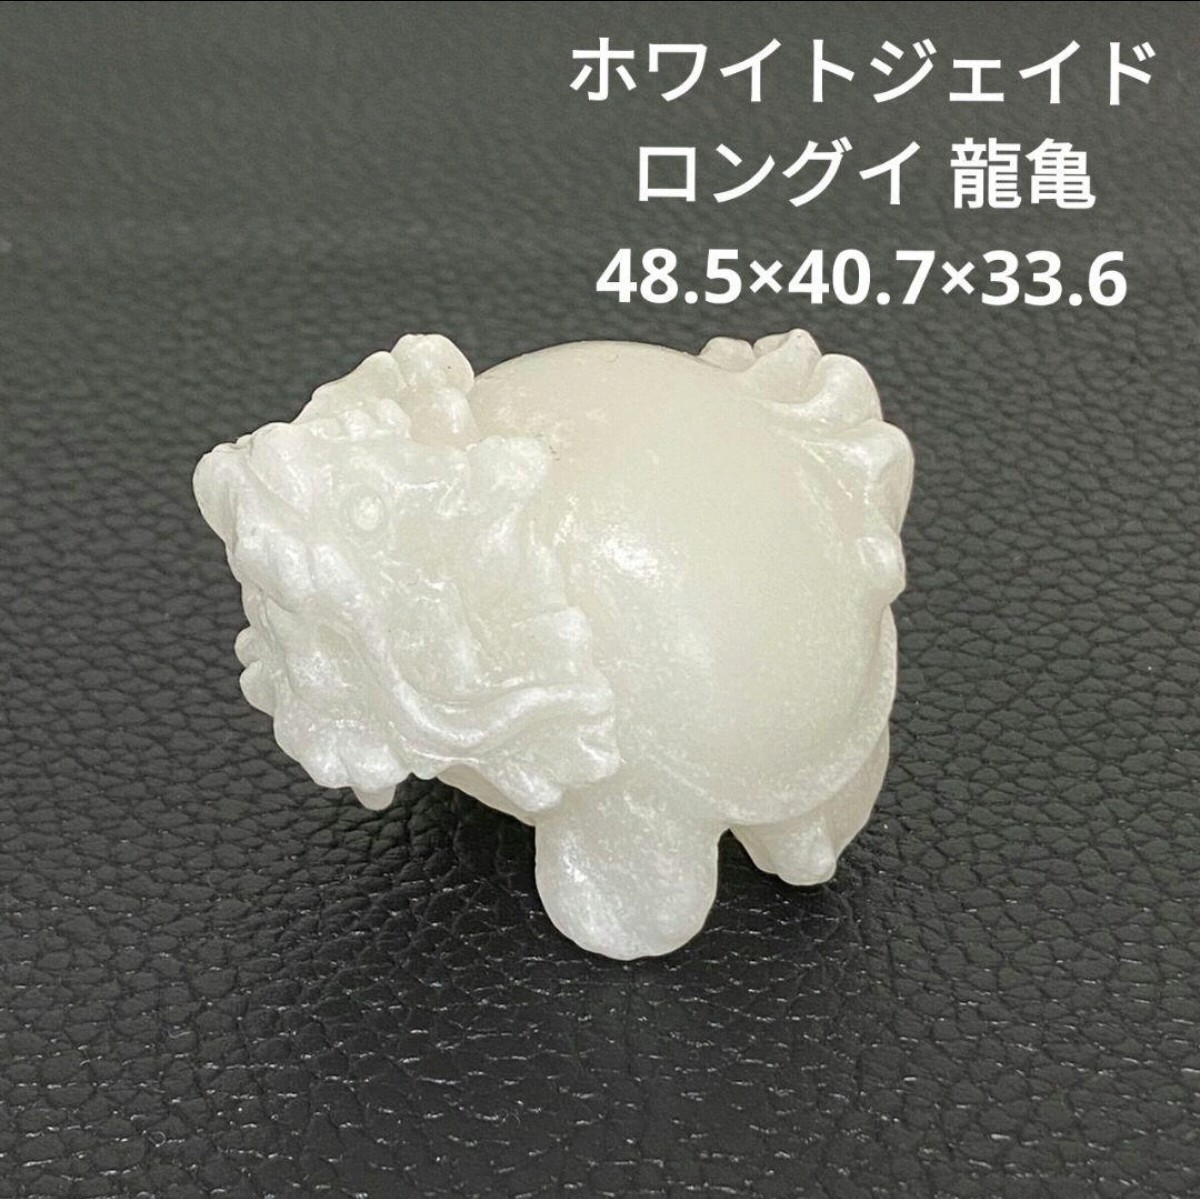 ☆処分価格Q82 ホワイトジェイド ロングイ 龍亀 48.5×40.7×33.6